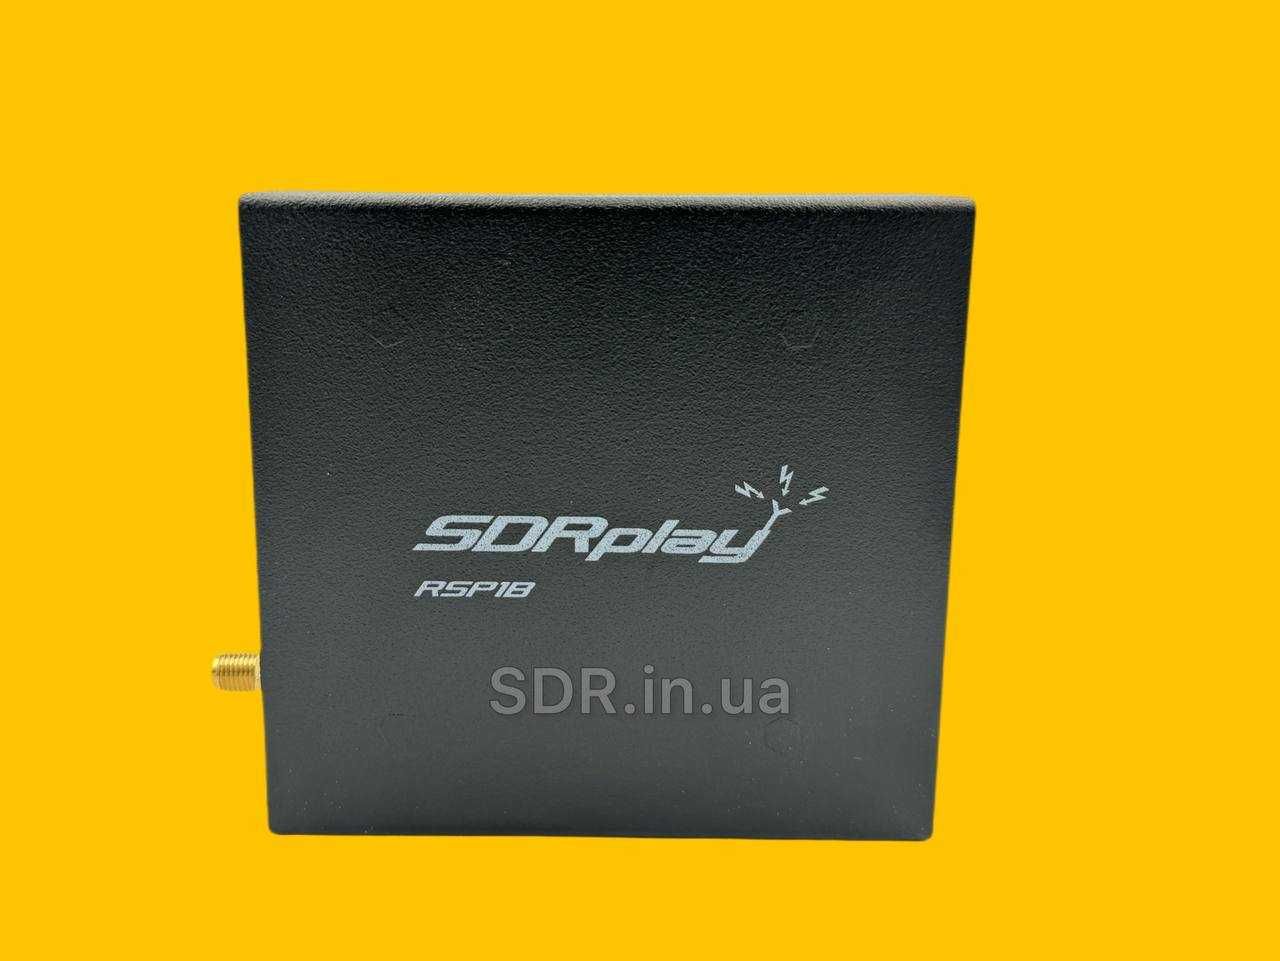 SDRplay RSP1B 14-біт широкосмуговий радіоприймач 1кГц-2ГГц